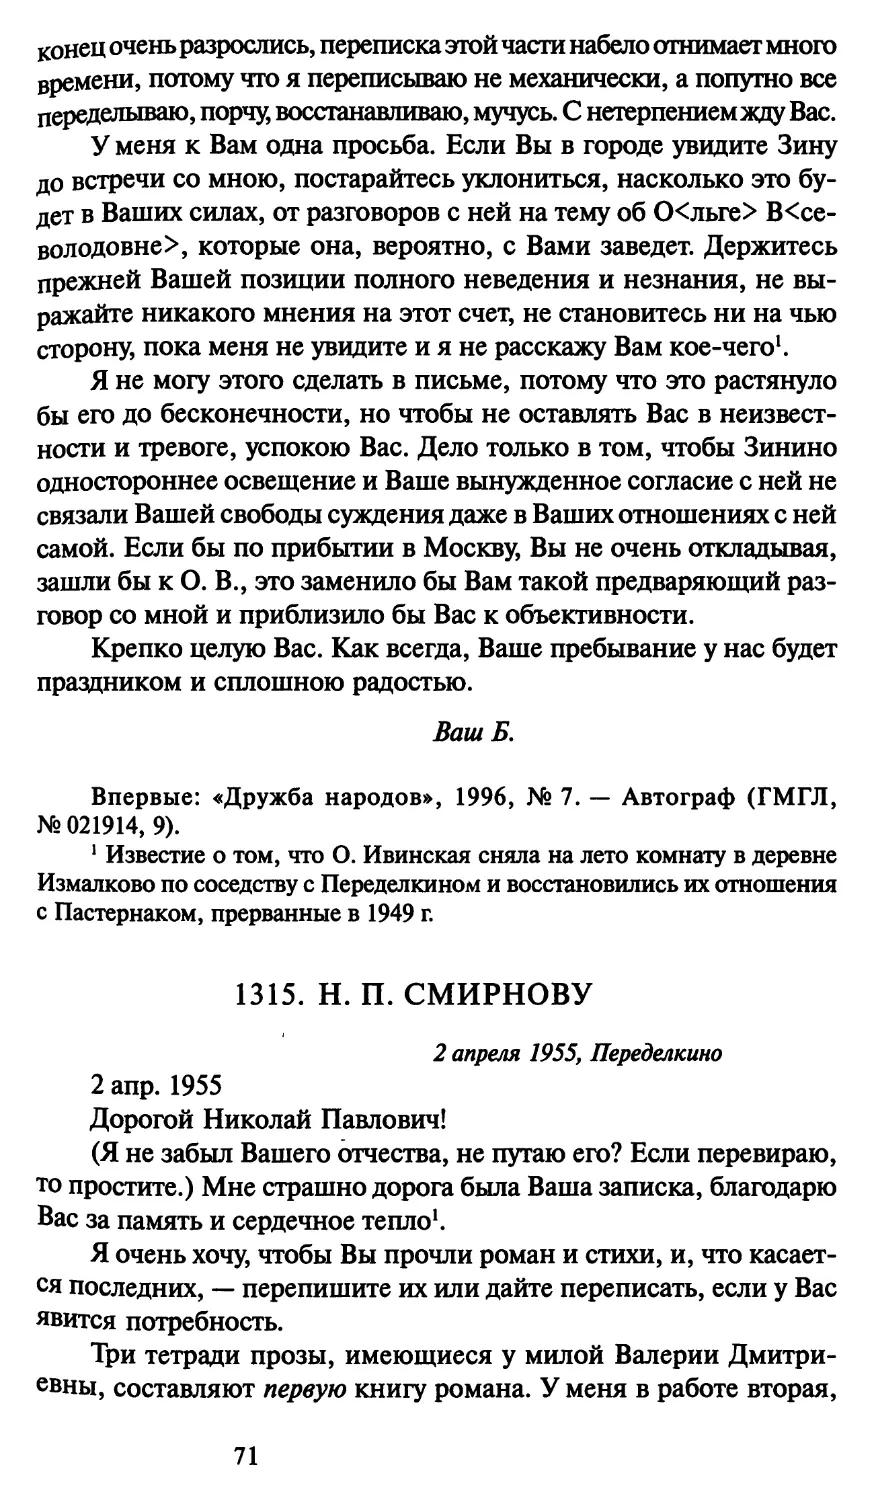 1315. Н. П. Смирнову 2 апреля 1955